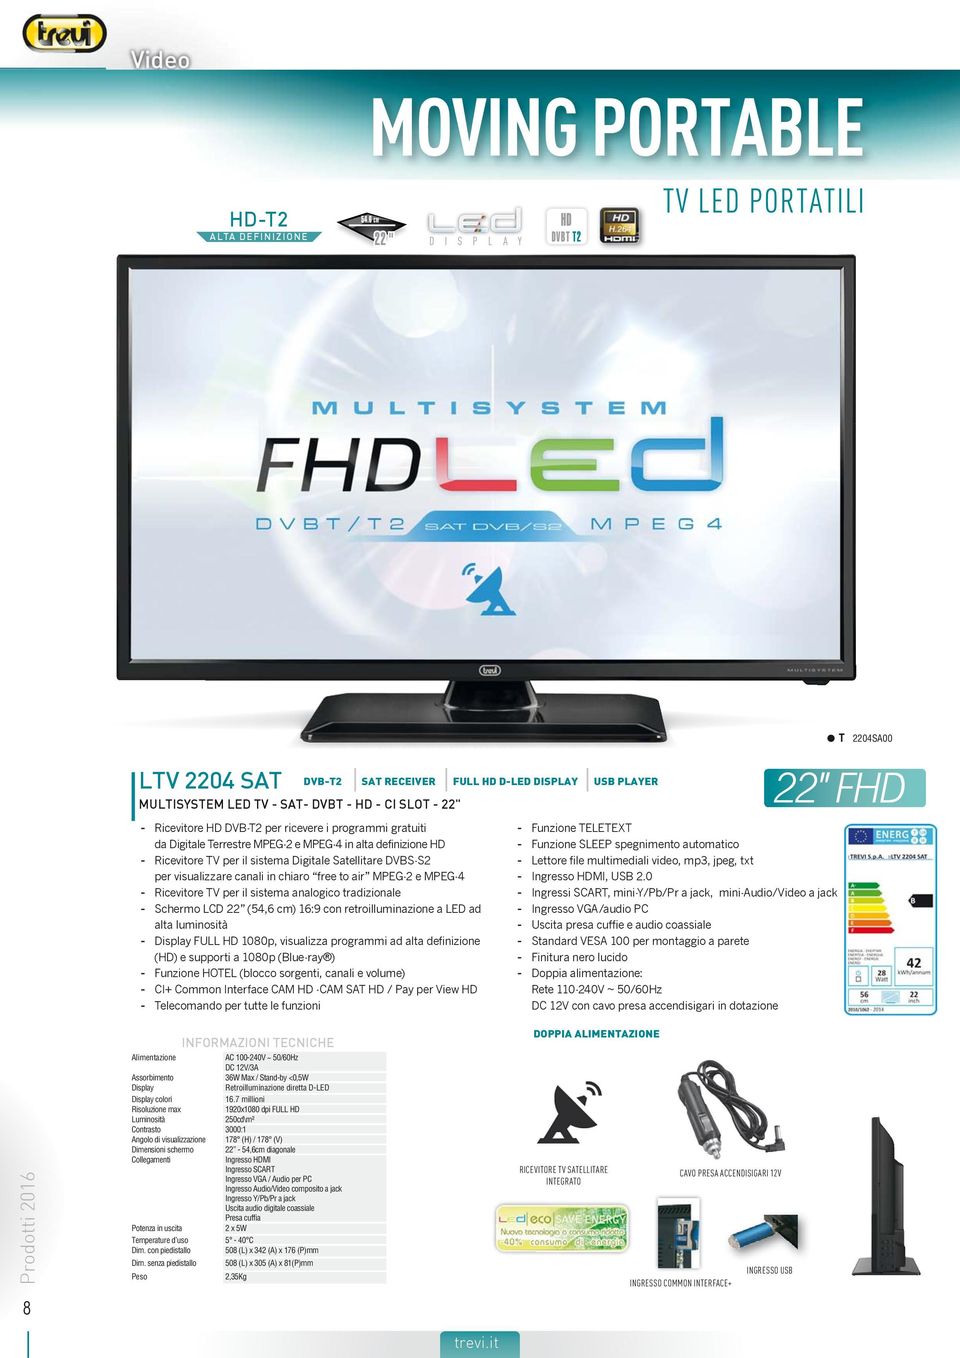 programmi gratuiti da Digitale Terrestre MPEG-2 e MPEG-4 in alta definizione - Ricevitore TV per il sistema Digitale Satellitare DVBS-S2 per visualizzare canali in chiaro free to air MPEG-2 e MPEG-4